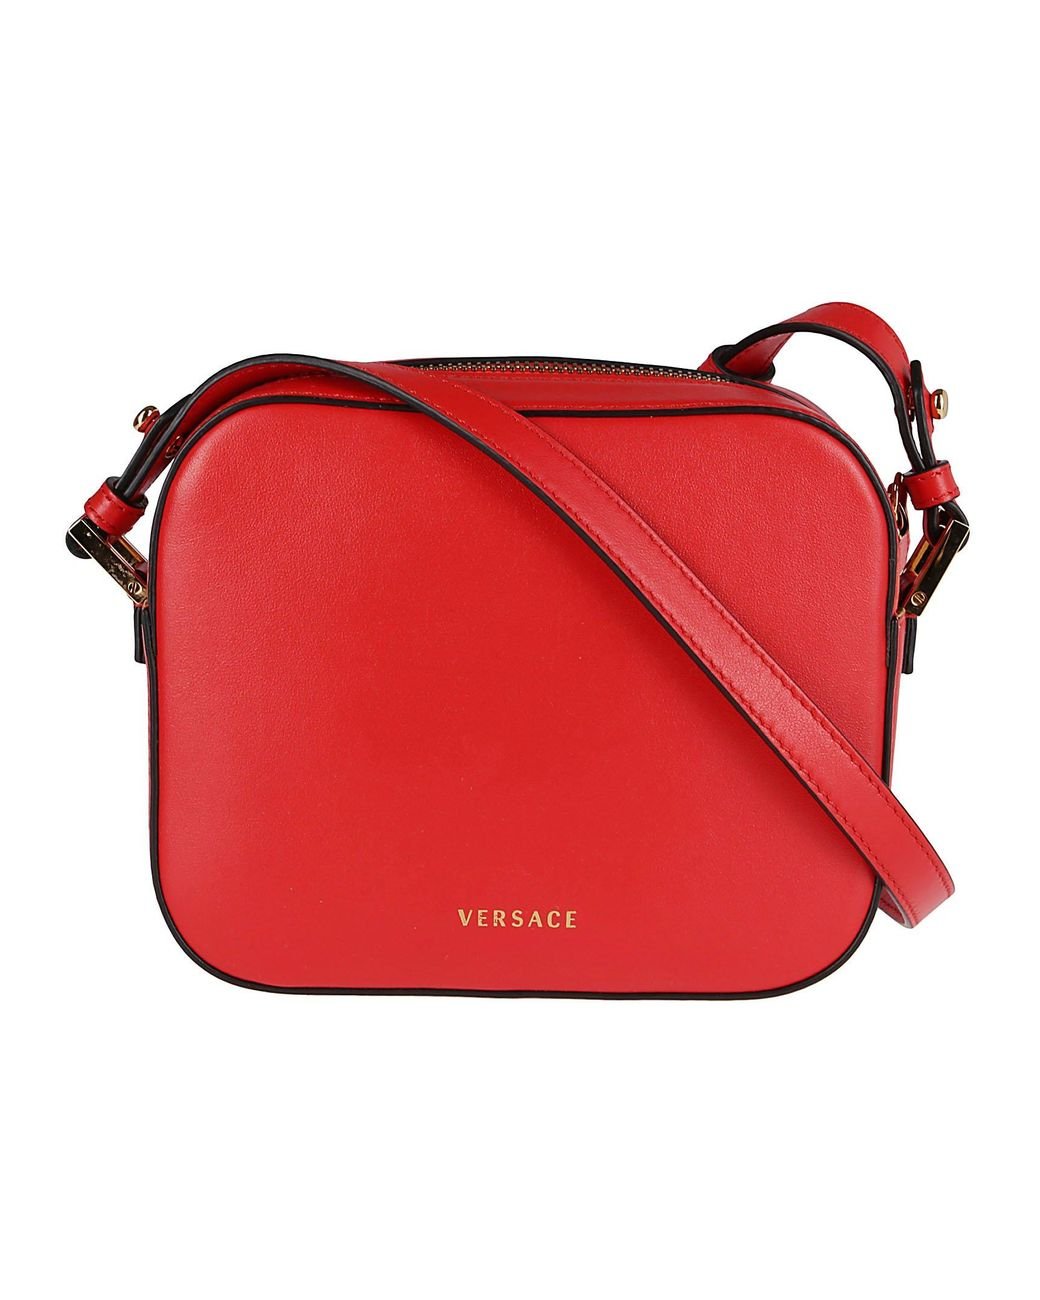 Versace Virtus Rose Applique Bag Leather Shoulder Crossbody Red